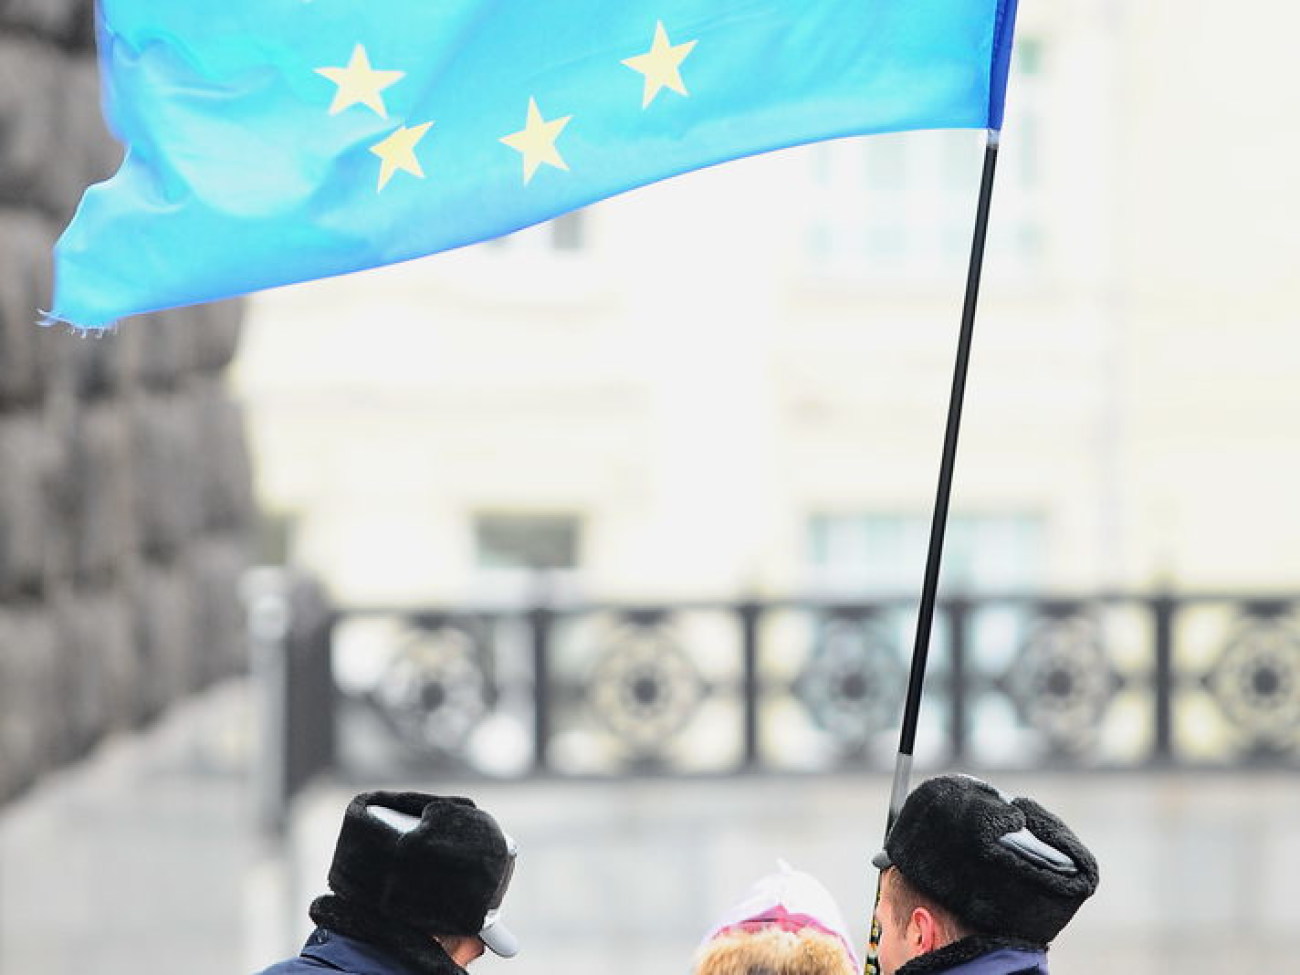 Евромайдан и быт: буржуйки, одеяла и бутерброды с салом, 26 ноября 2013г.